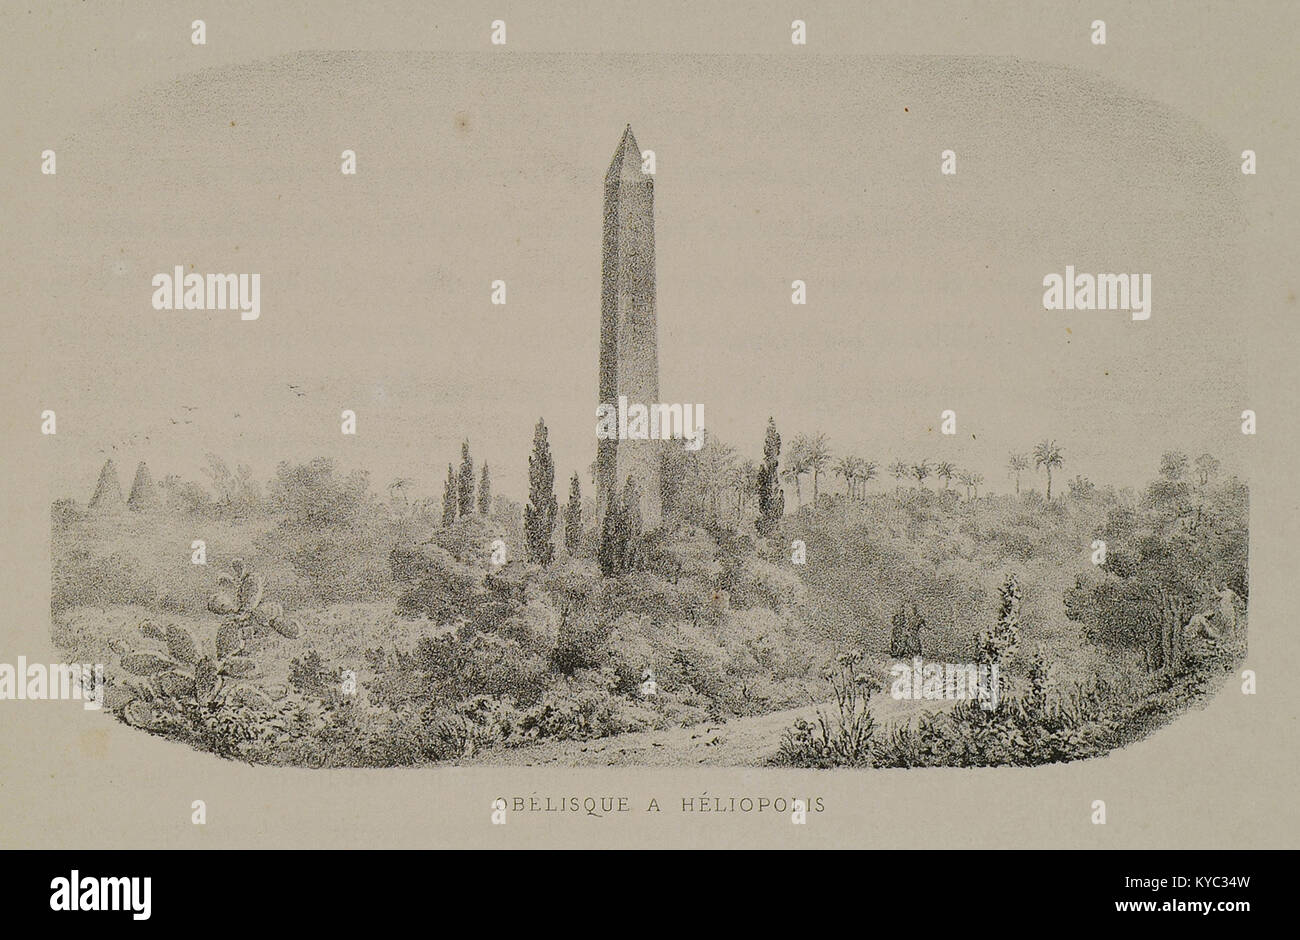 Obélisque à Héliopolis - Rey Etienne - 1867 Stock Photo